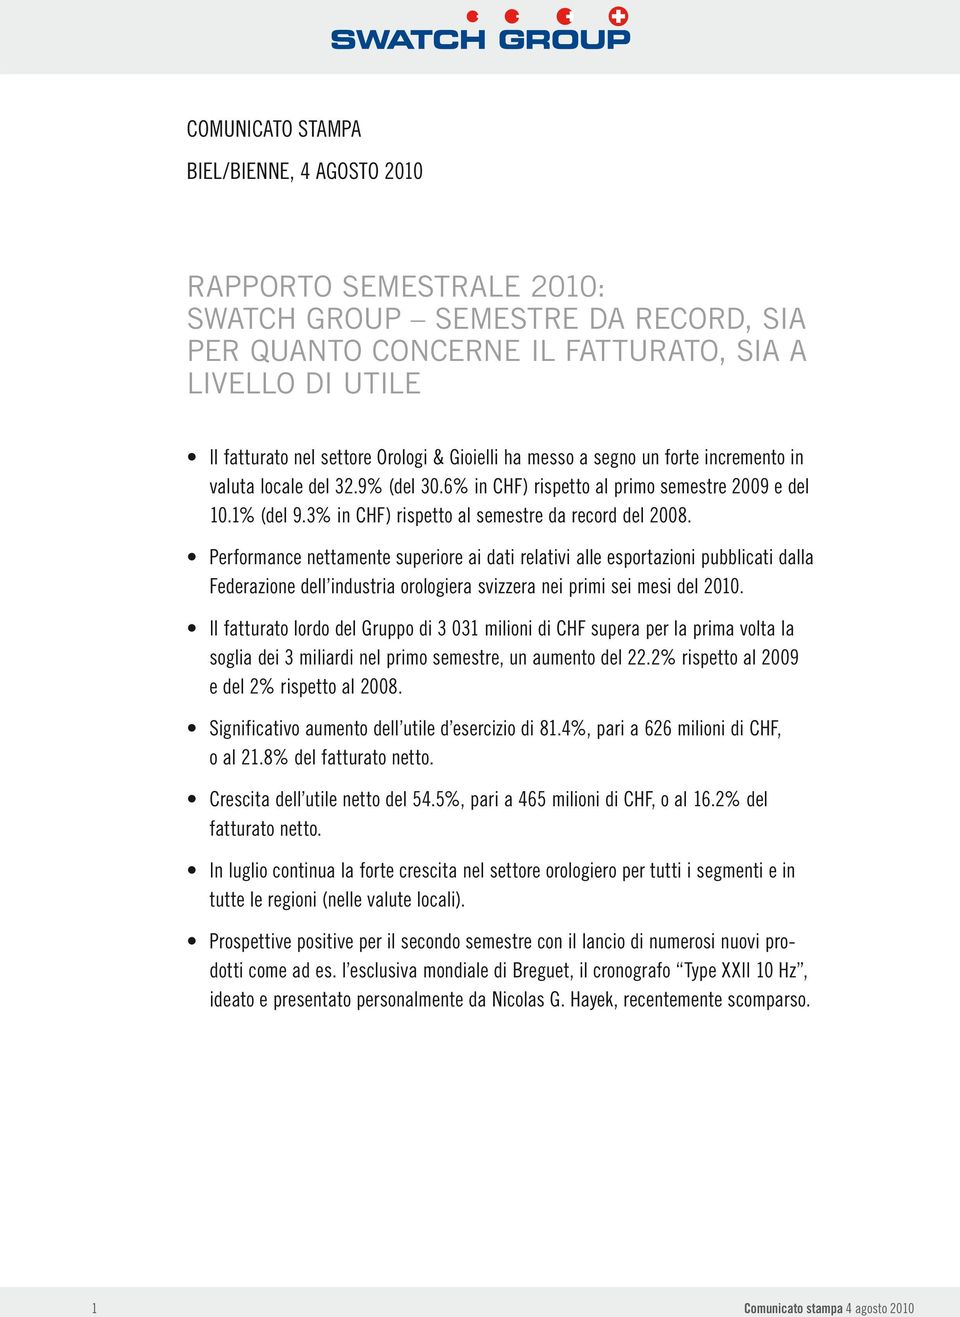 Performance nettamente superiore ai dati relativi alle esportazioni pubblicati dalla Federazione dell industria orologiera svizzera nei primi sei mesi del 2010.